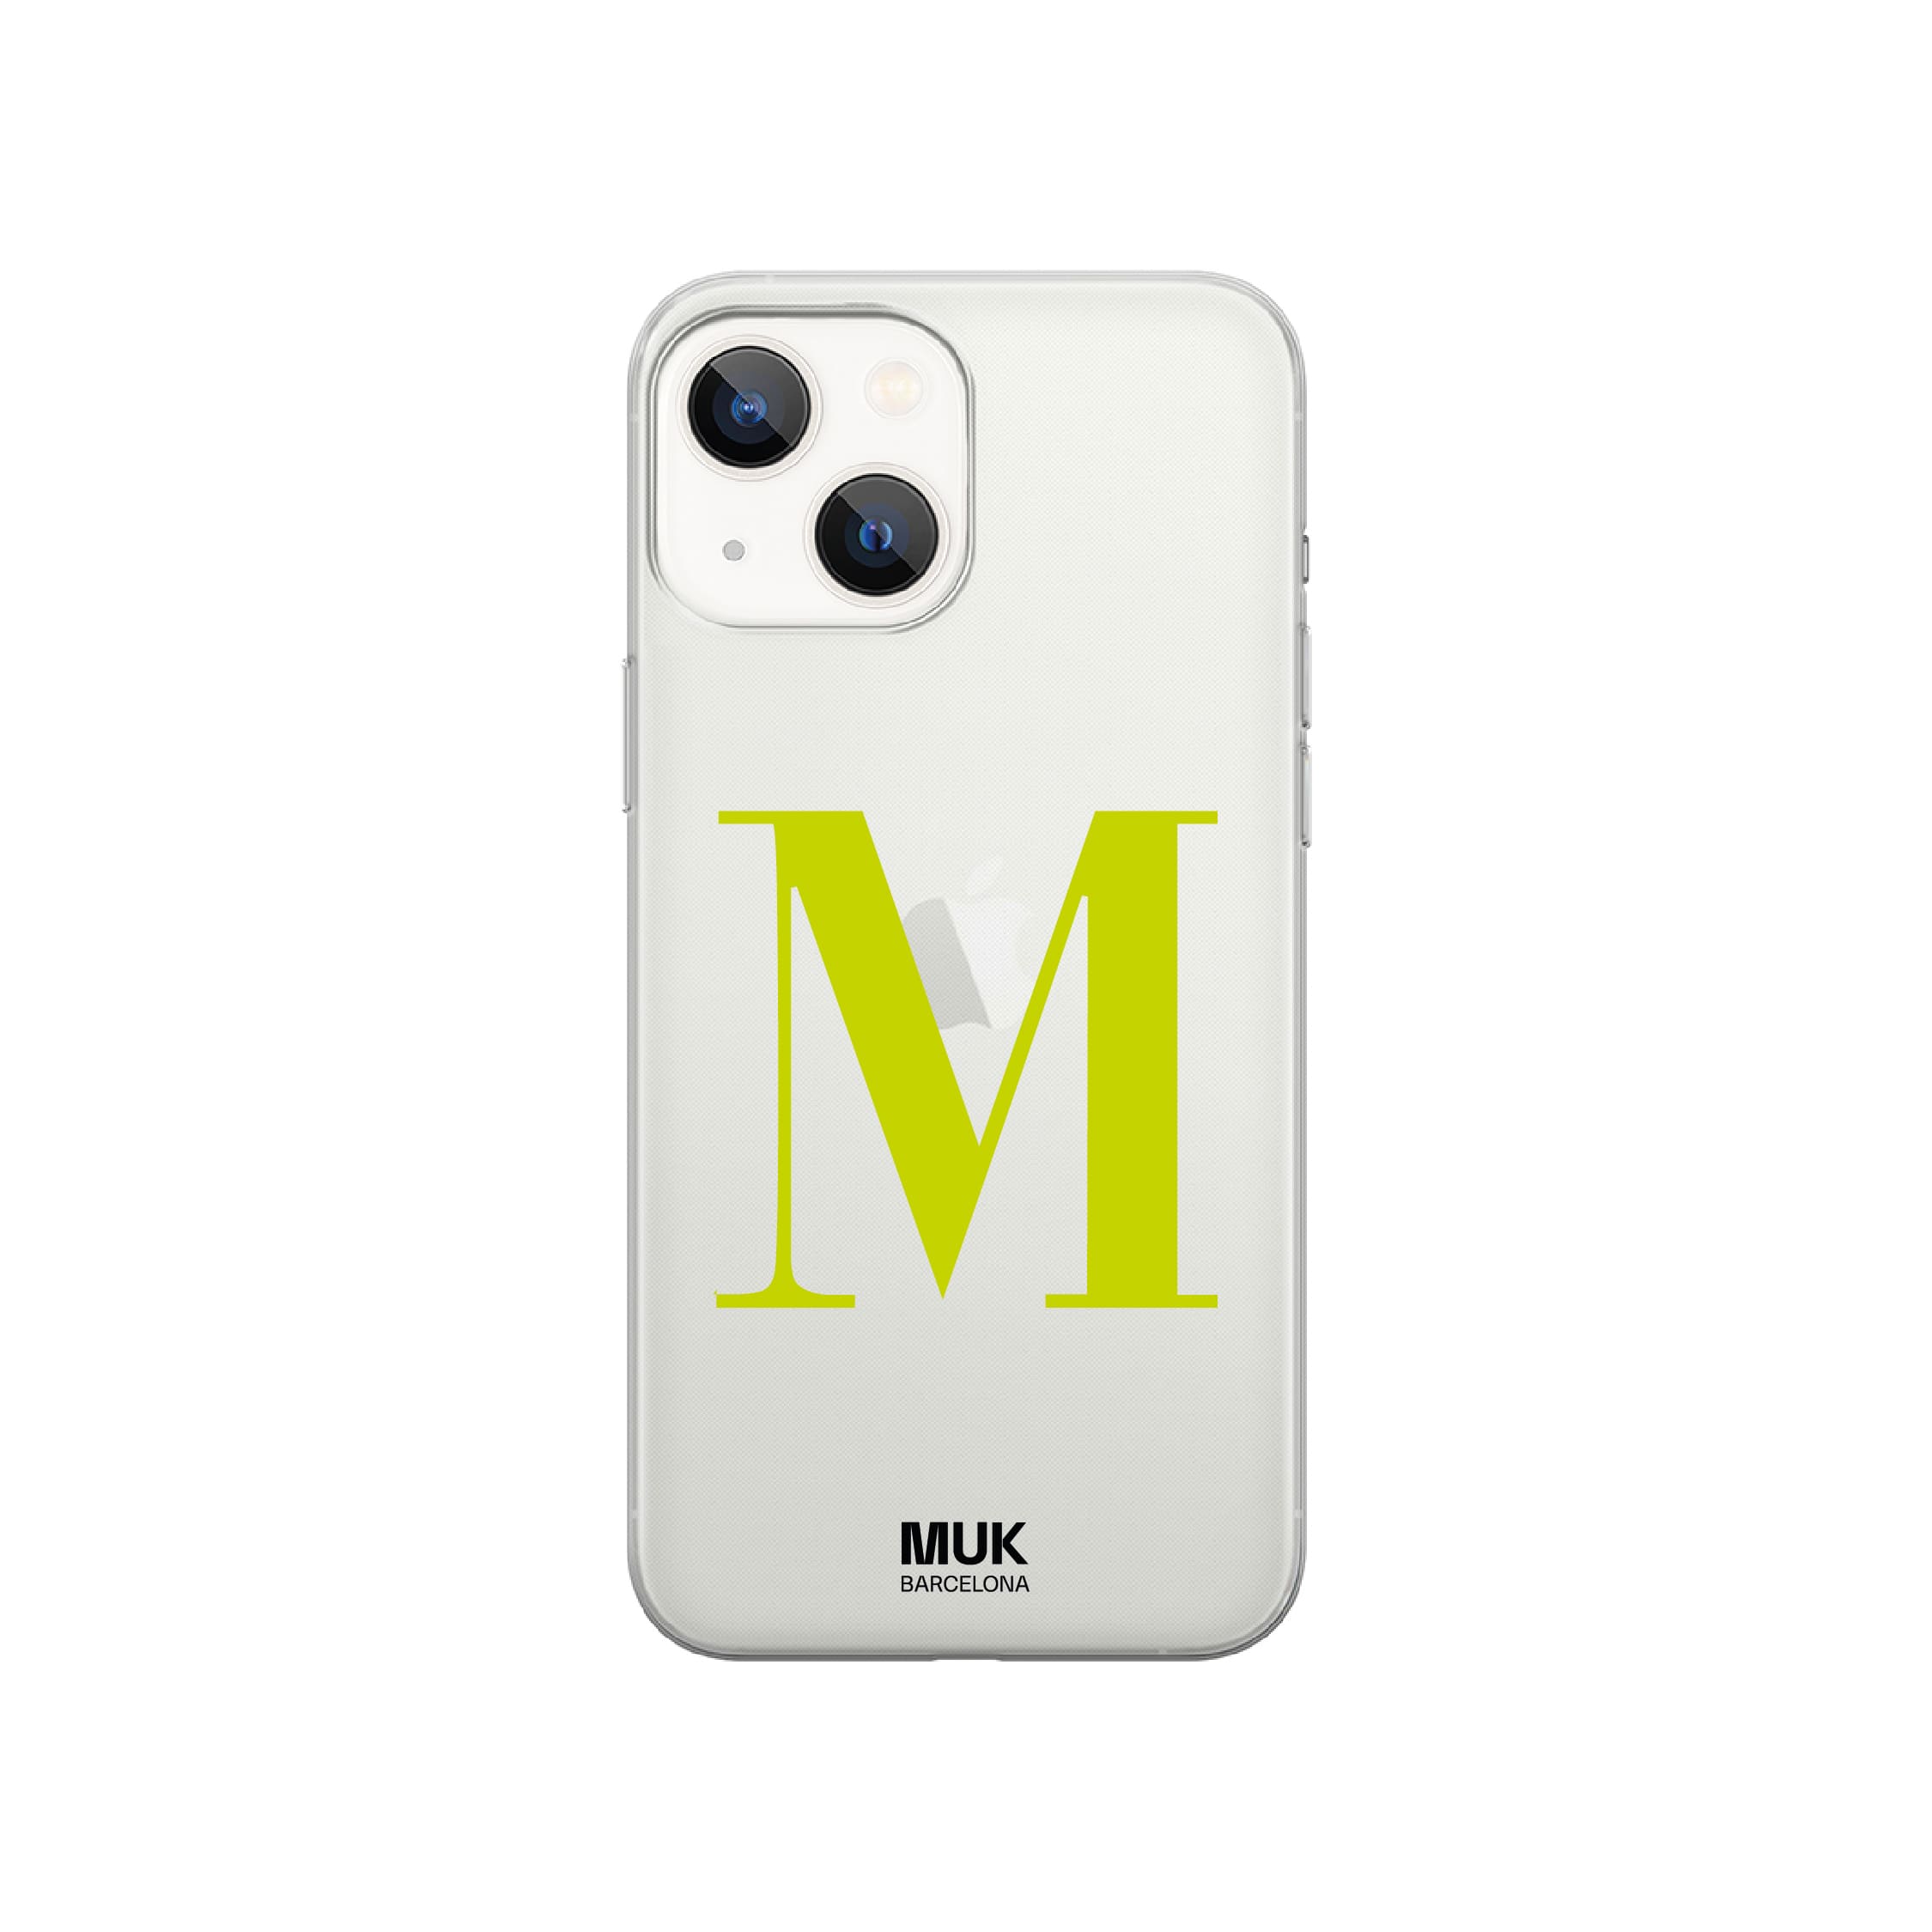 Funda de móvil transparente personalizada con inicial en letra mayúscula en 12 colores.
